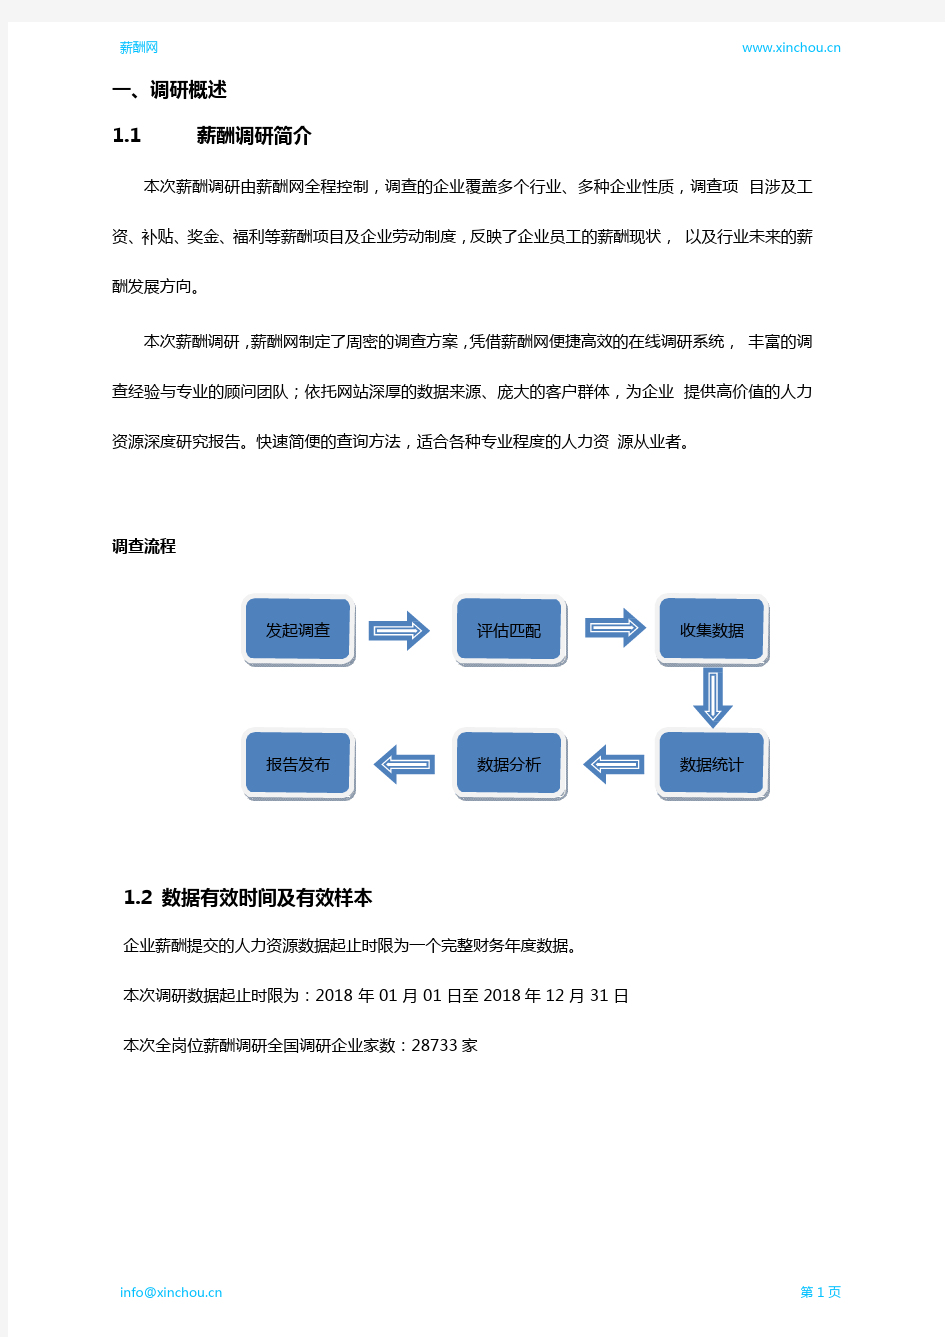 2019天津地区项目工程师职位薪酬报告